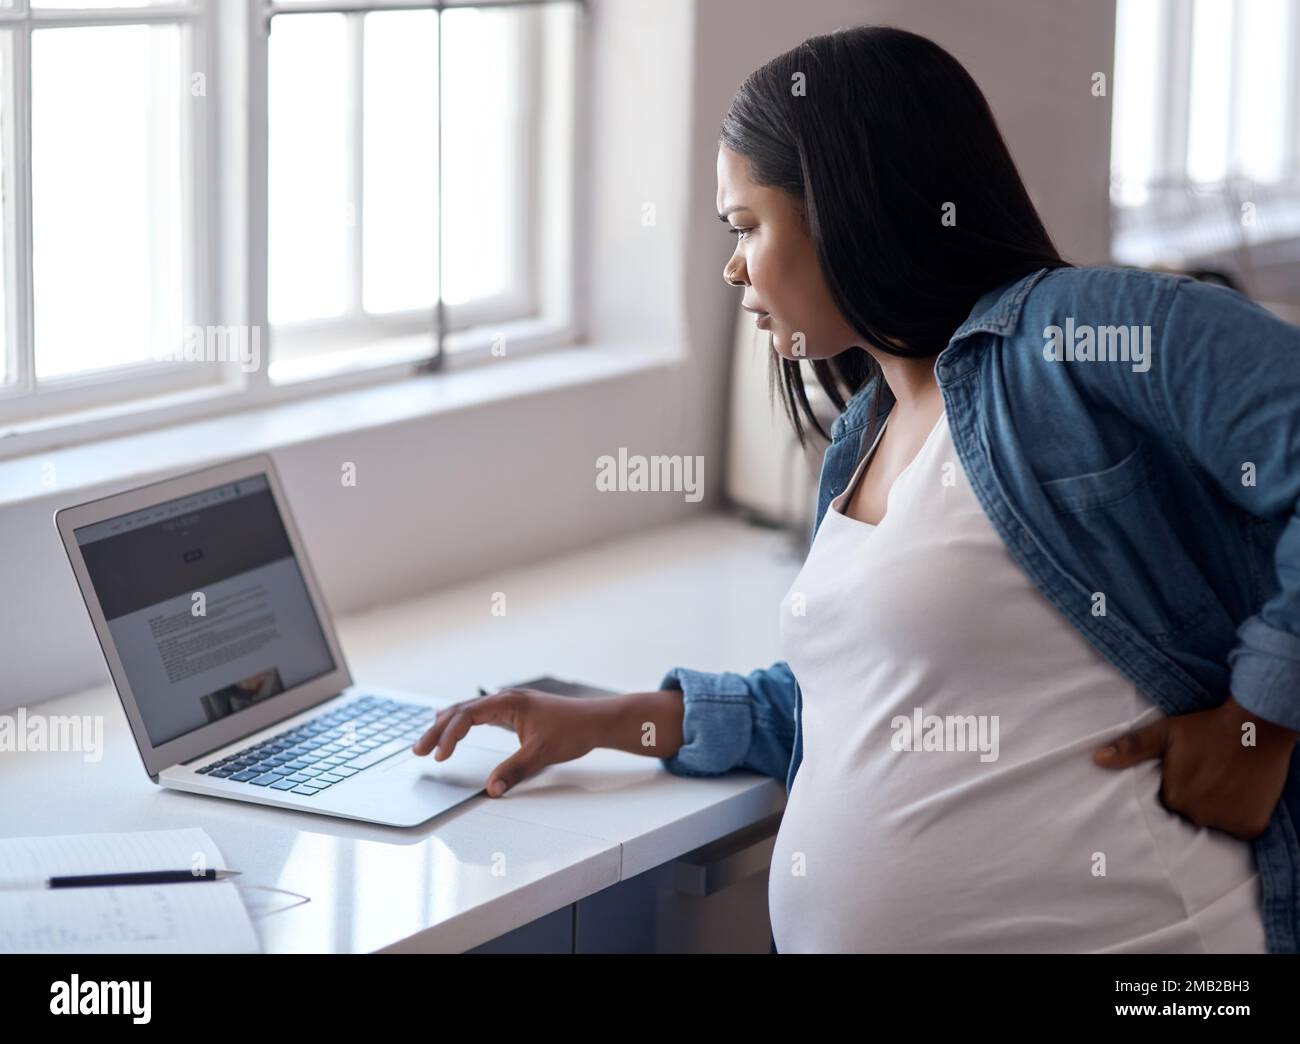 Mutter zu werden, lässt mich meine Träume noch mehr verfolgen. Eine schwangere Frau, die ihren Laptop benutzt, während sie zu Hause sitzt. Stockfoto